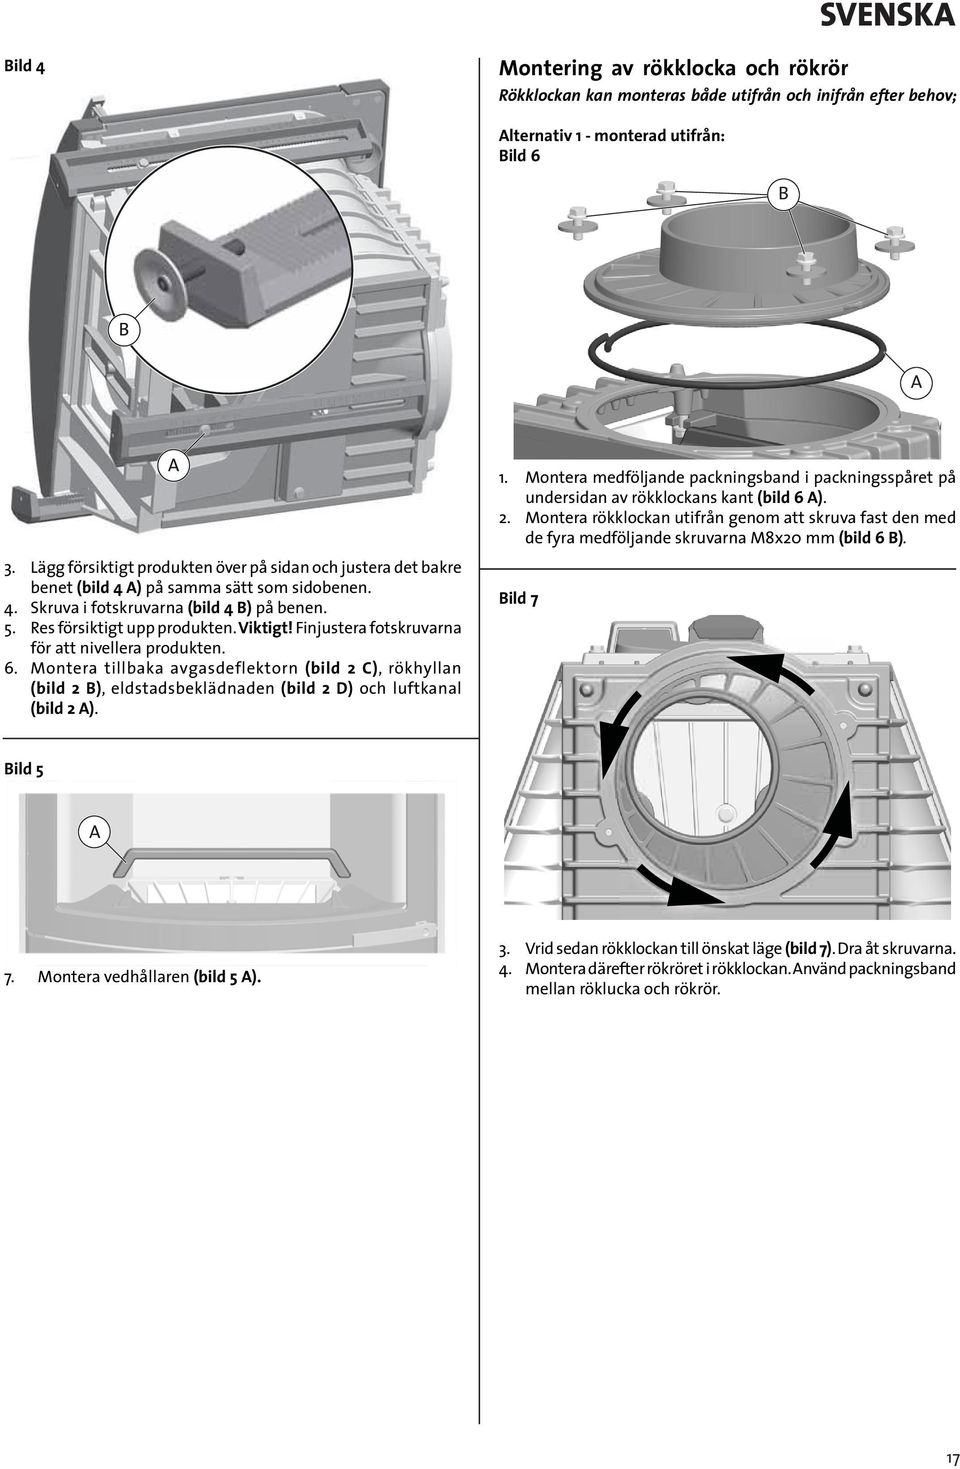 Finjustera fotskruvarna för att nivellera produkten. 6. Montera tillbaka avgasdeflektorn (bild 2 C), rökhyllan (bild 2 ), eldstadsbeklädnaden (bild 2 D) och luftkanal (bild 2 ). 1.